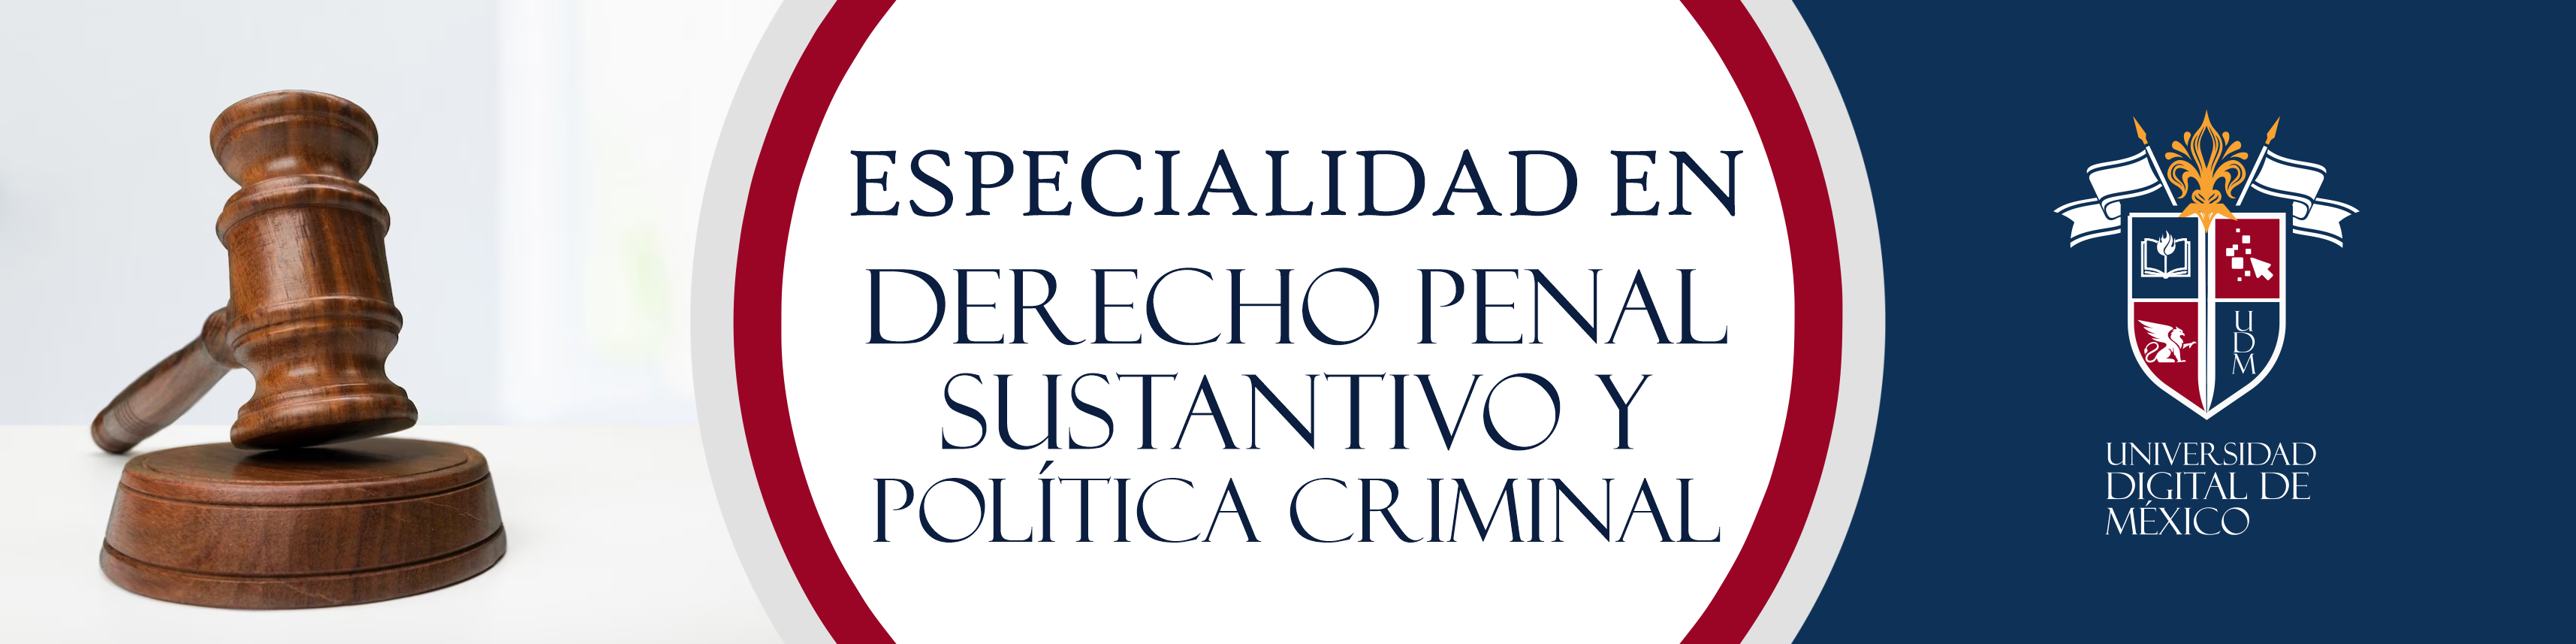 Especialidad en Derecho Penal Sustantivo y Política Criminal.